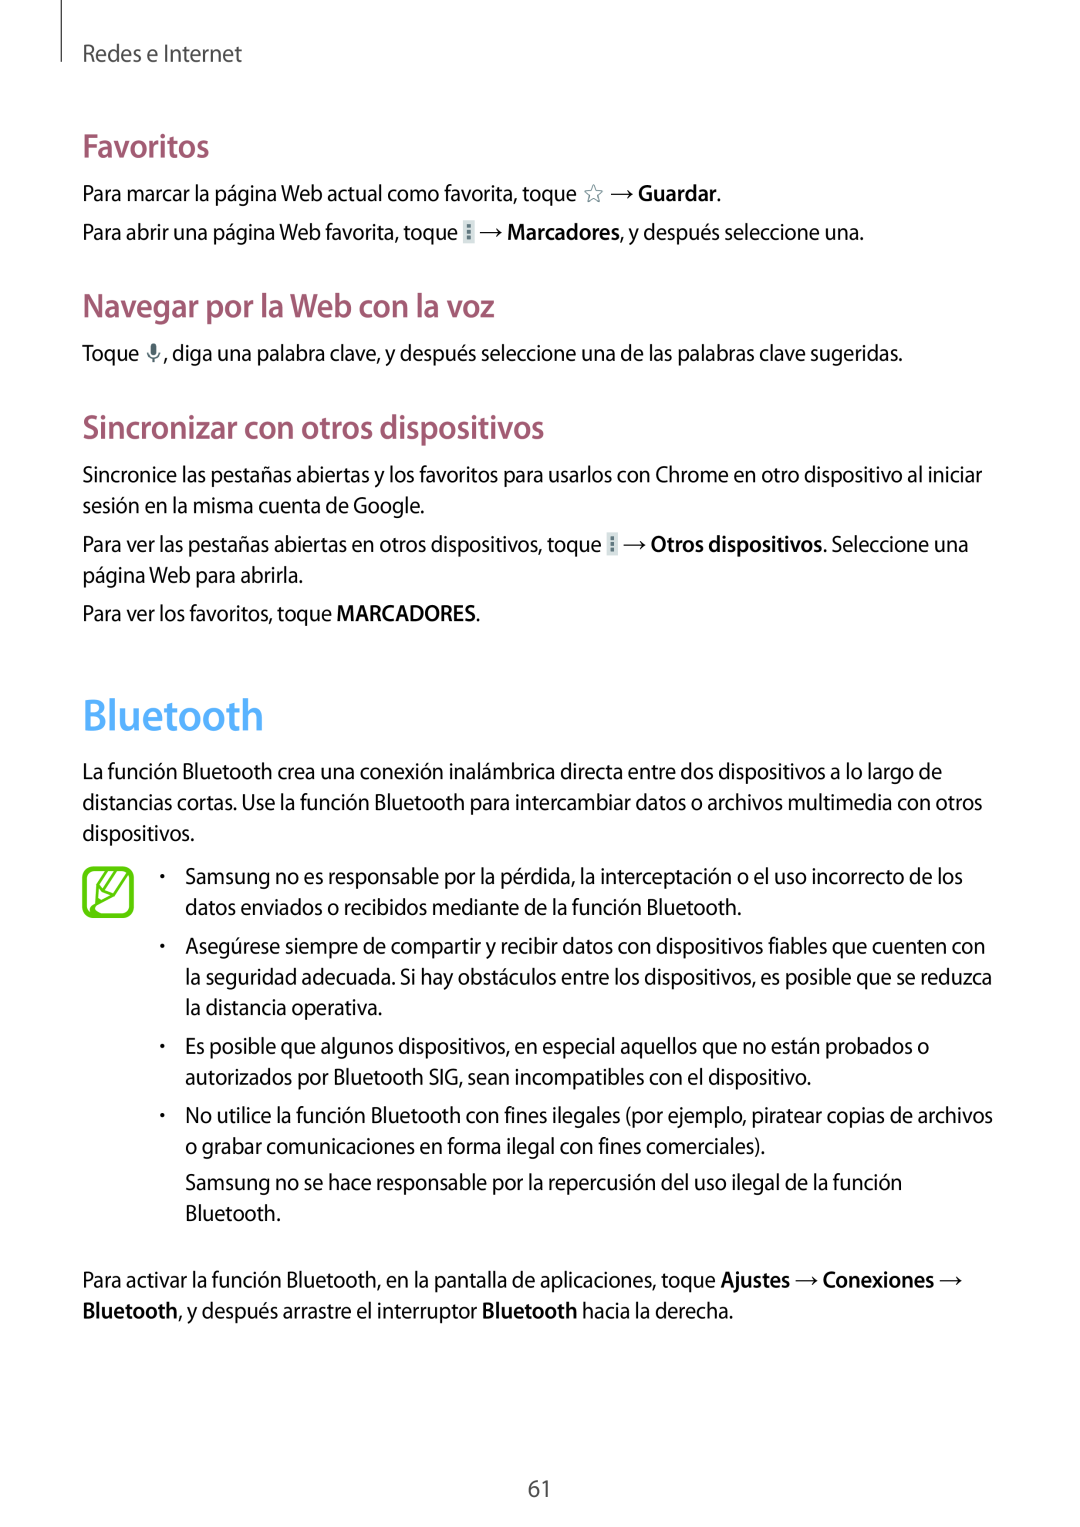 Samsung SM-T320NZKAPHE manual Bluetooth, Sincronizar con otros dispositivos, Favoritos, Navegar por la Web con la voz 